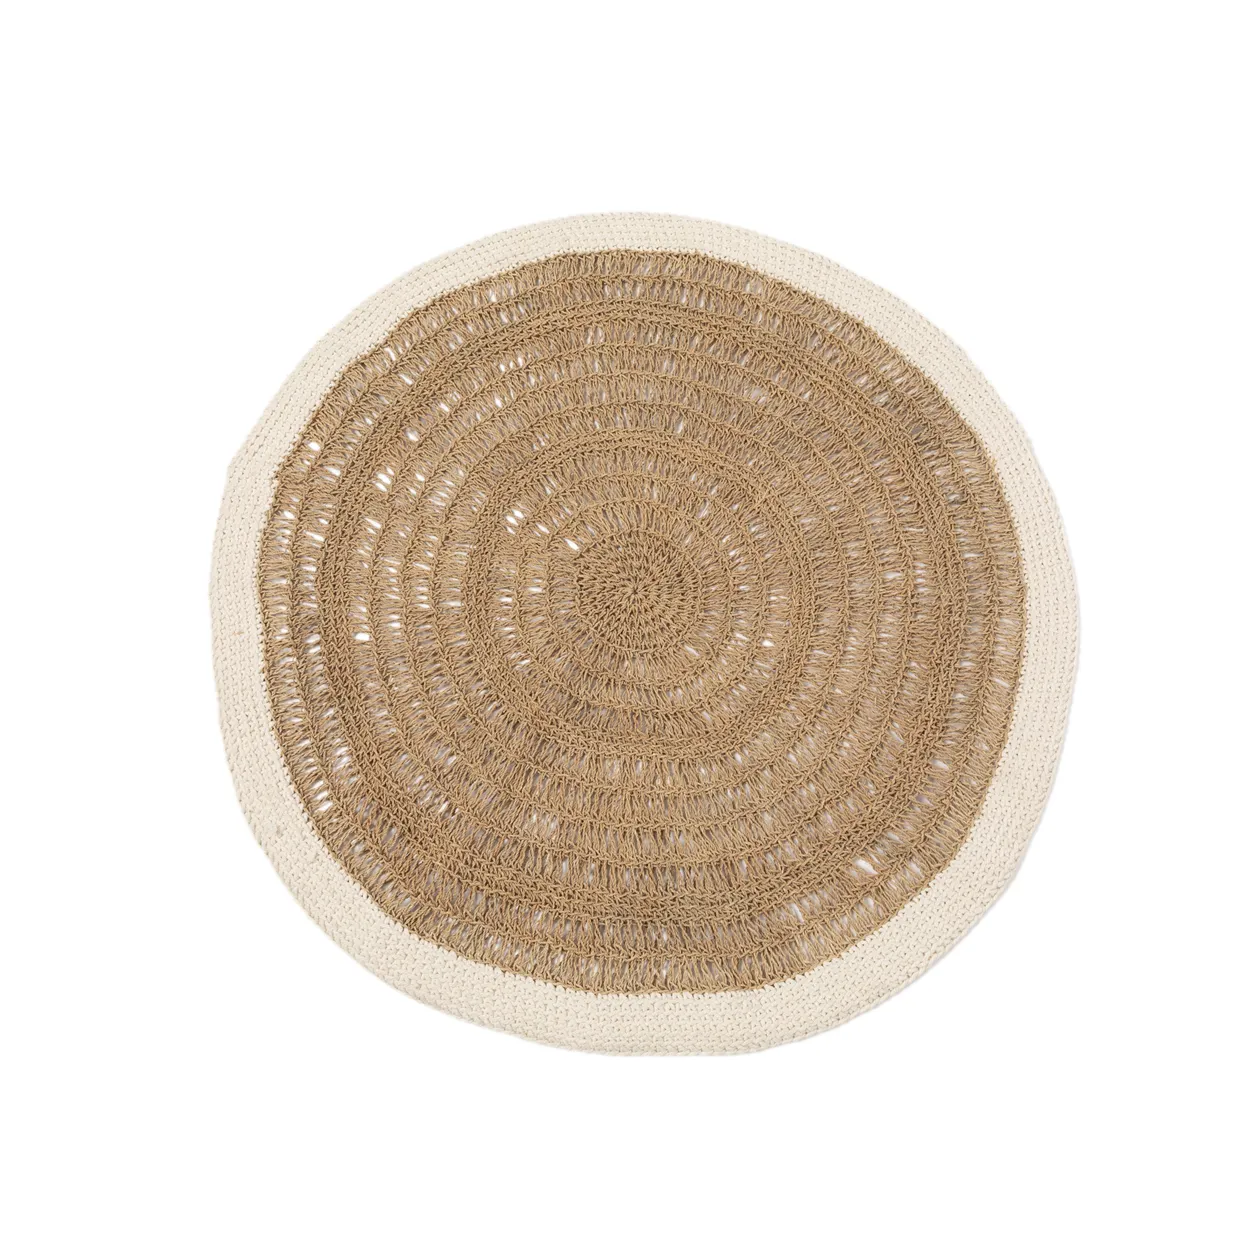 Runder Teppich aus Seegras und Baumwolle – Natur / Weiß – 100